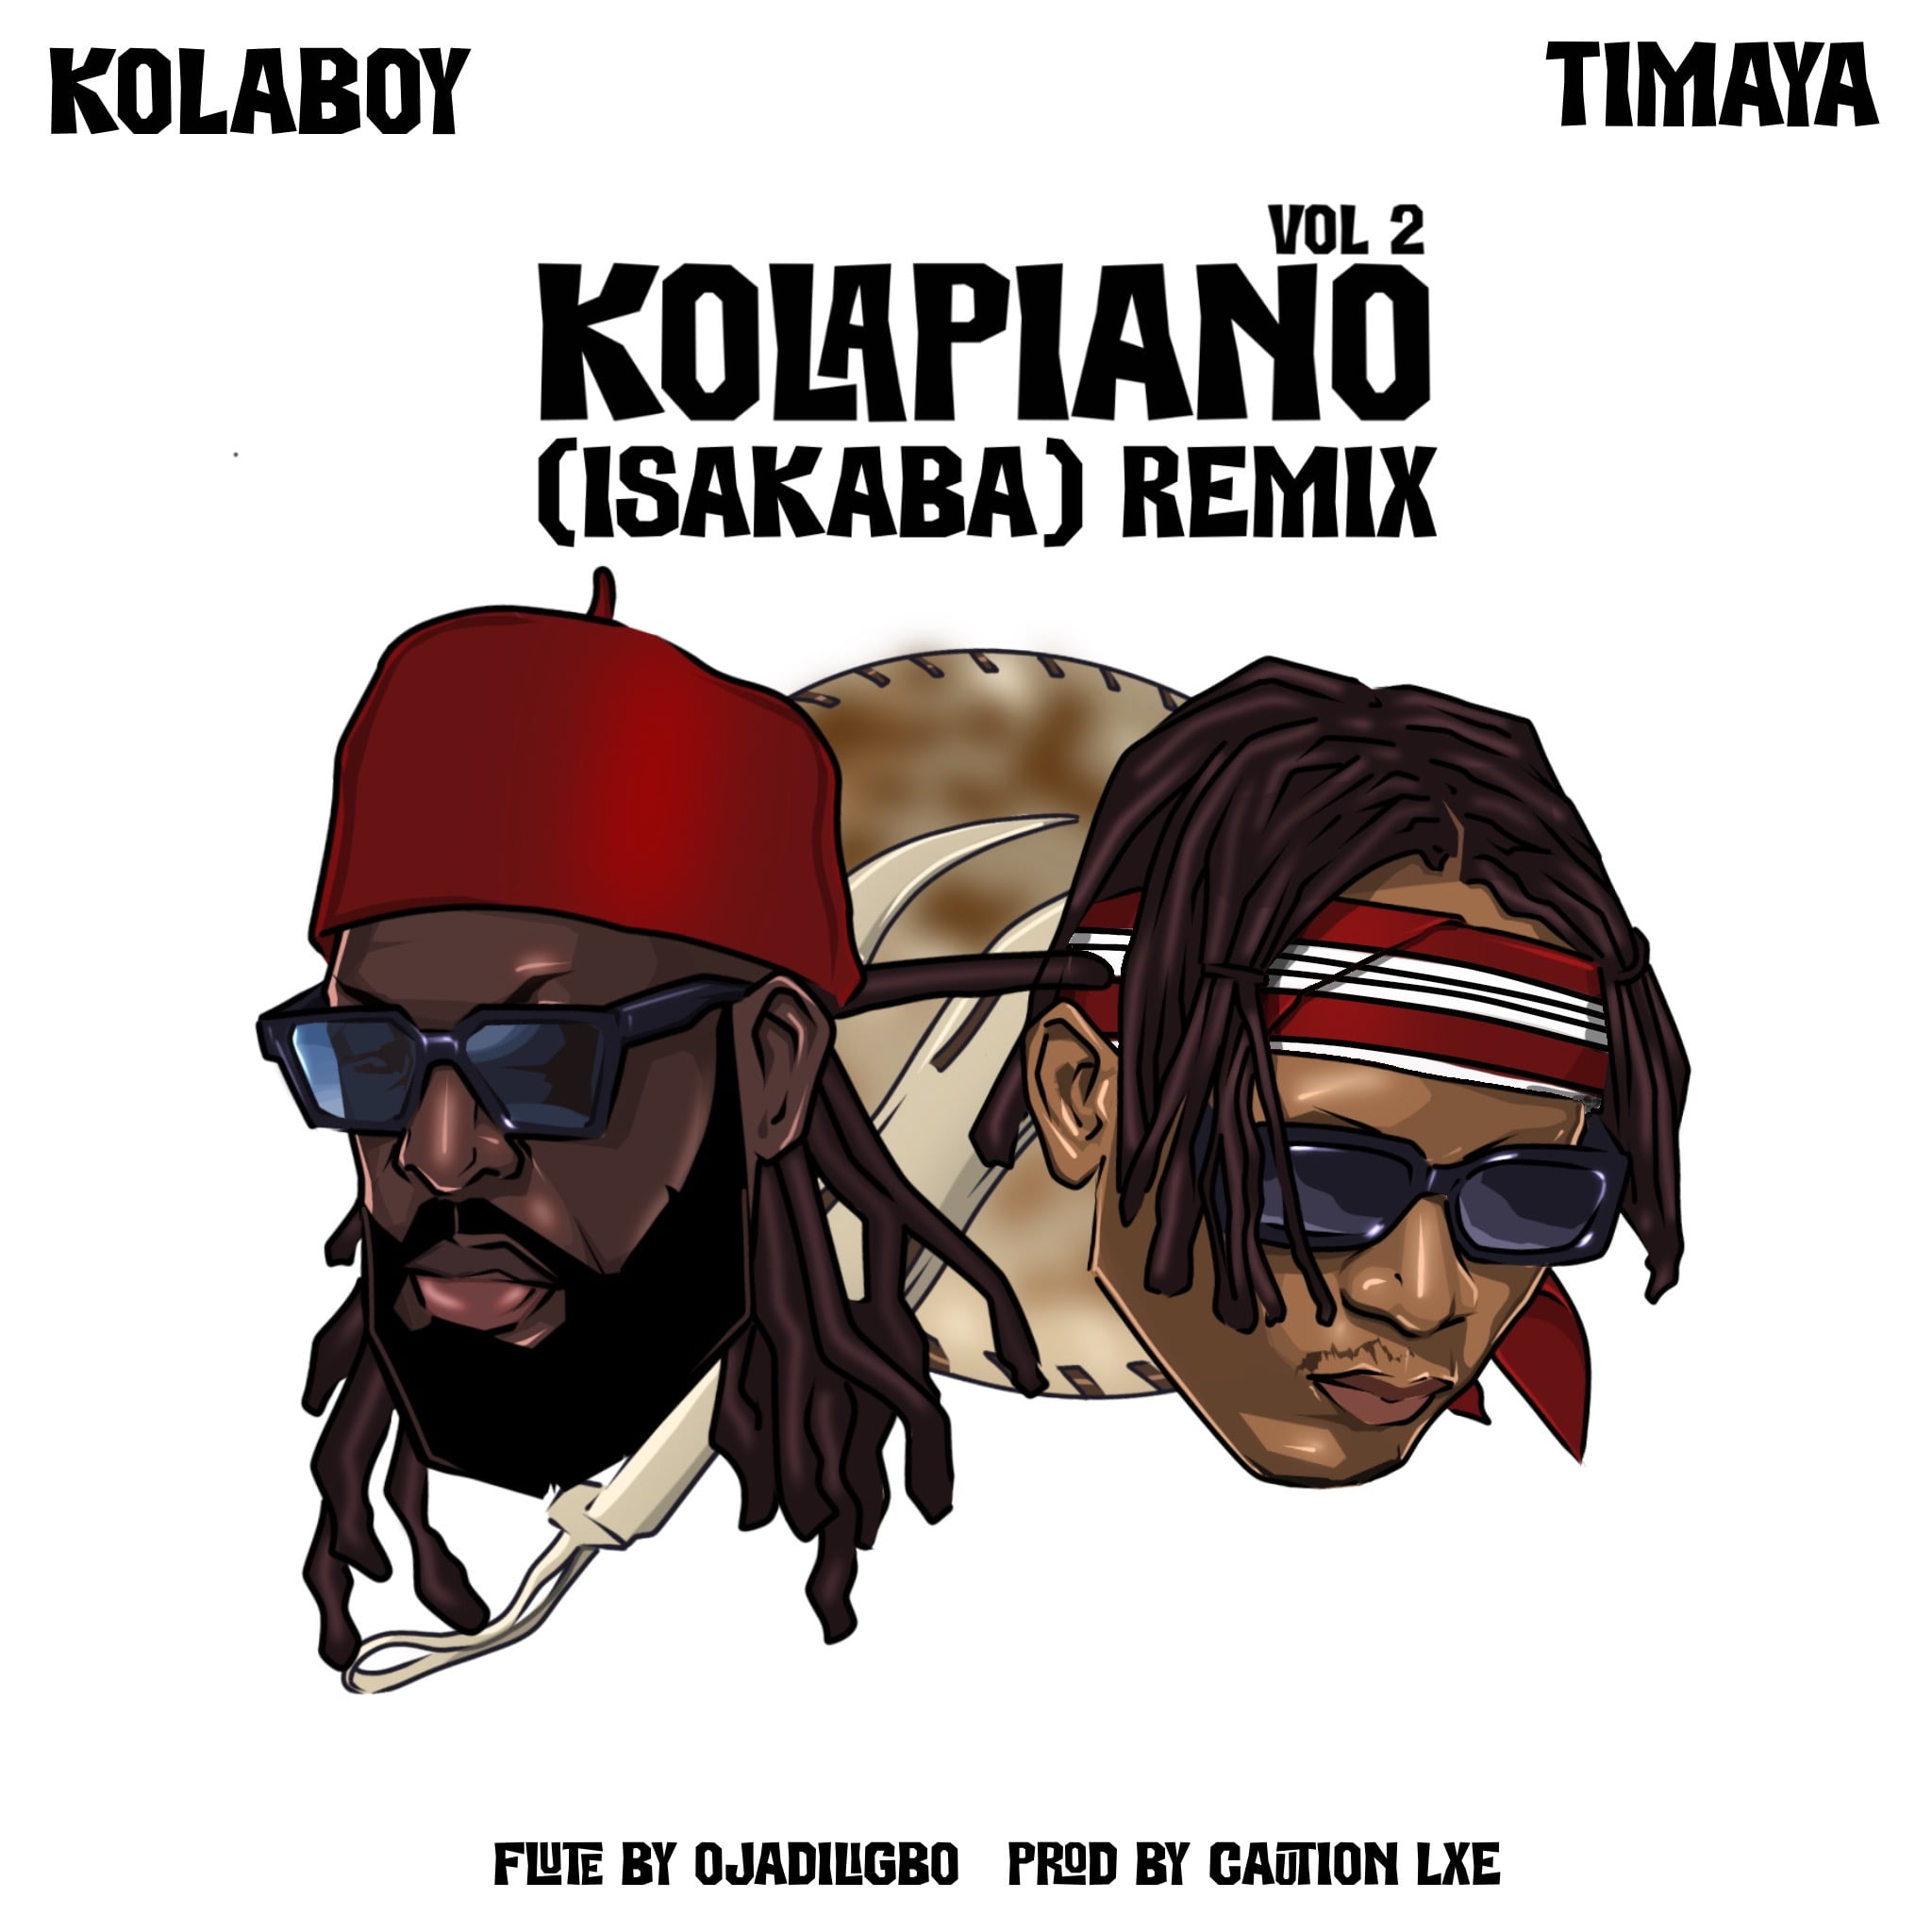 New Music + Video- Kolaboy feat Timaya Kolapiano 2 Remix